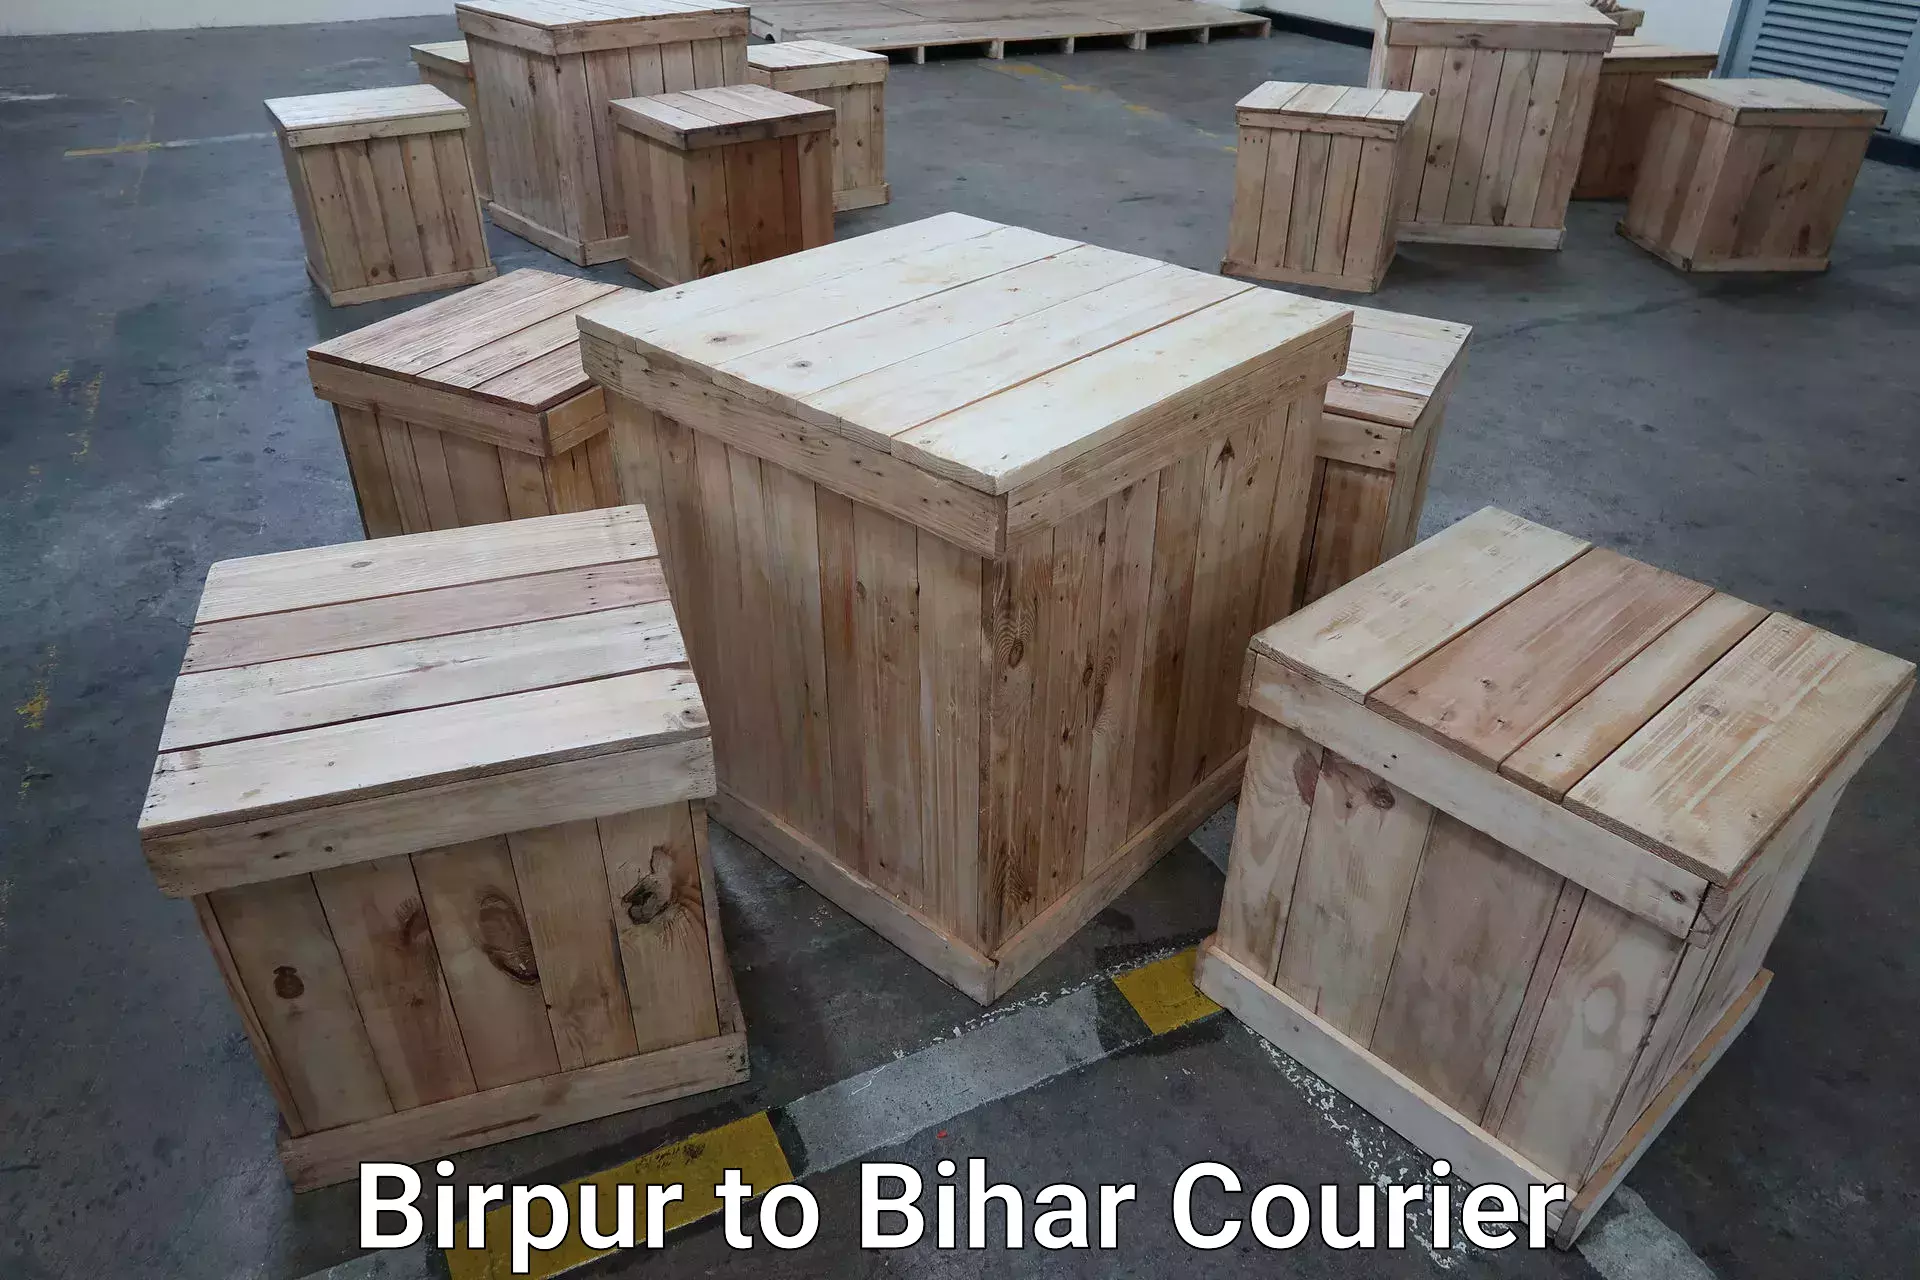 Luggage shipment tracking Birpur to Dholi Moraul